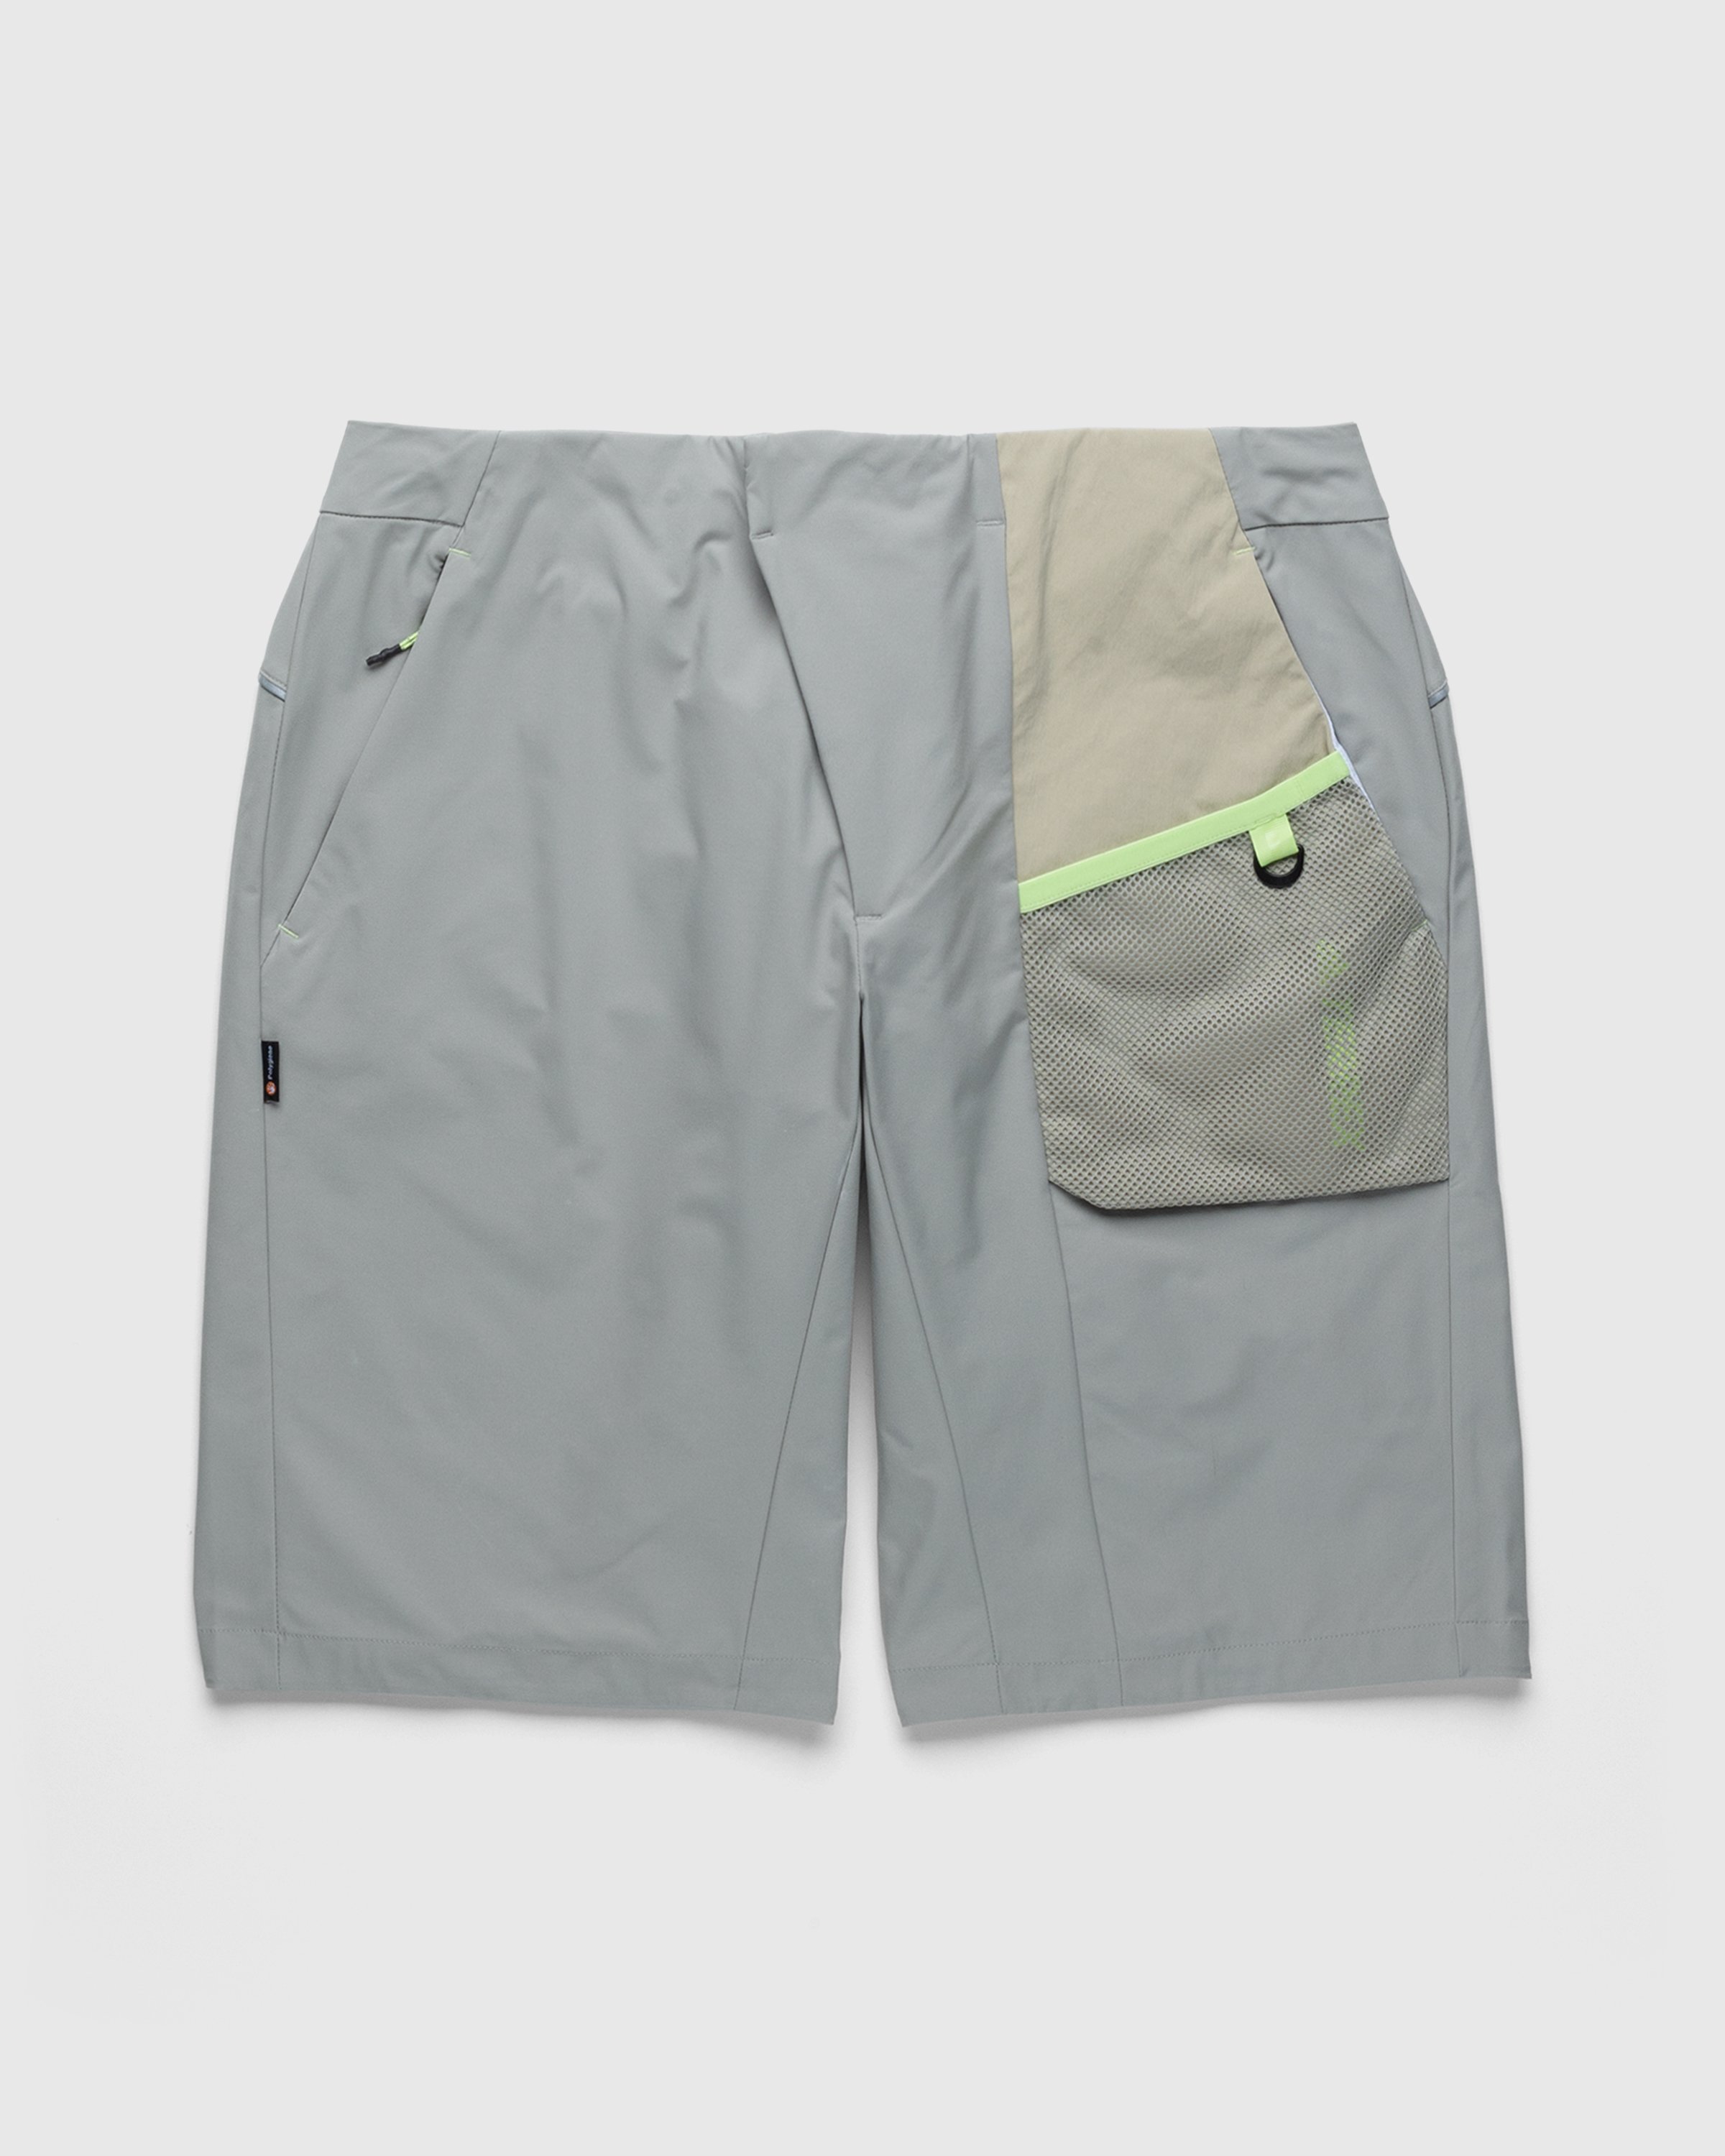 Adidas - Voyager Shorts Feather Grey/Savanna - Clothing - Beige - Image 1